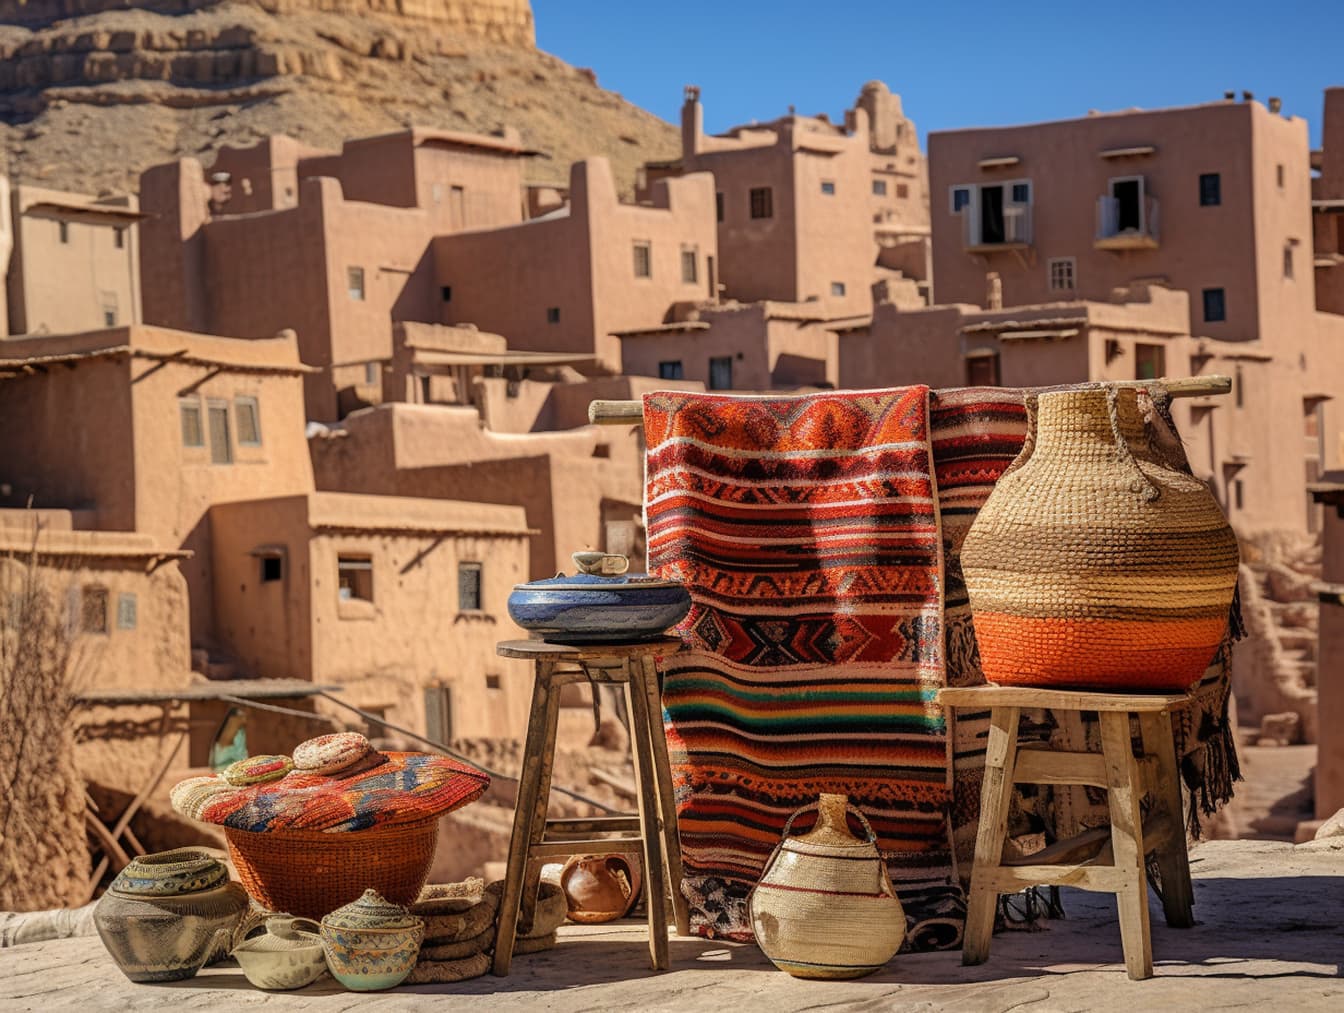 Gatumarknad i Marocko med korgar och keramik